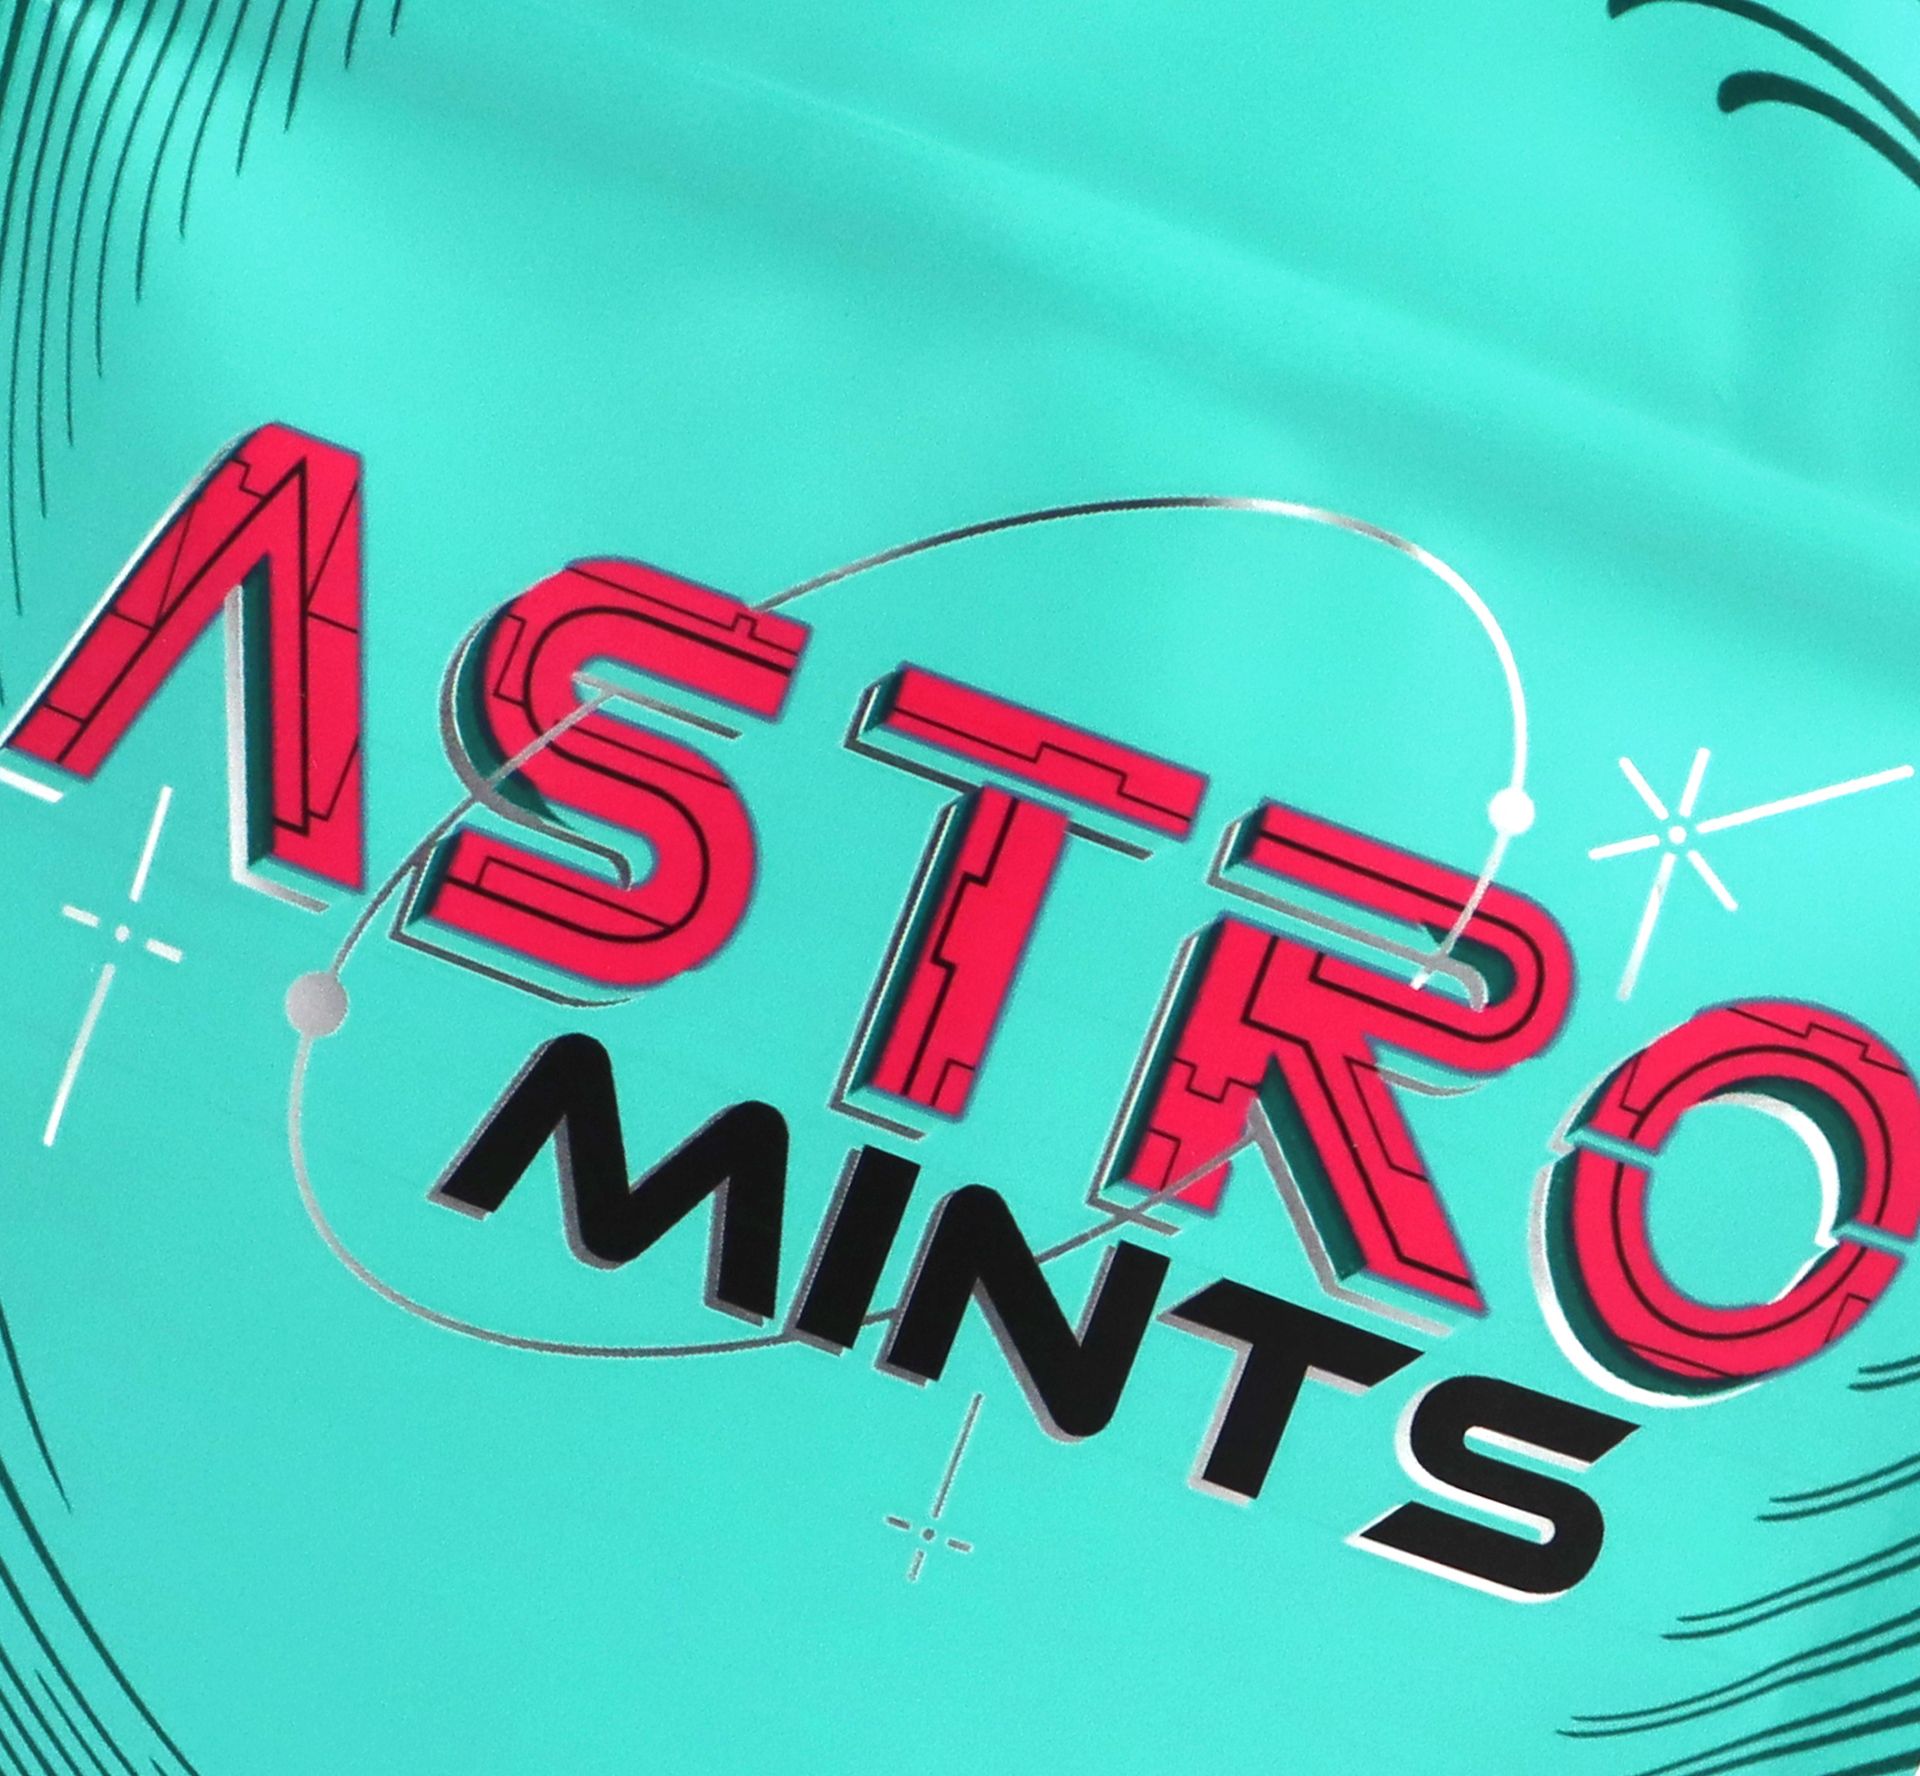 astro mints